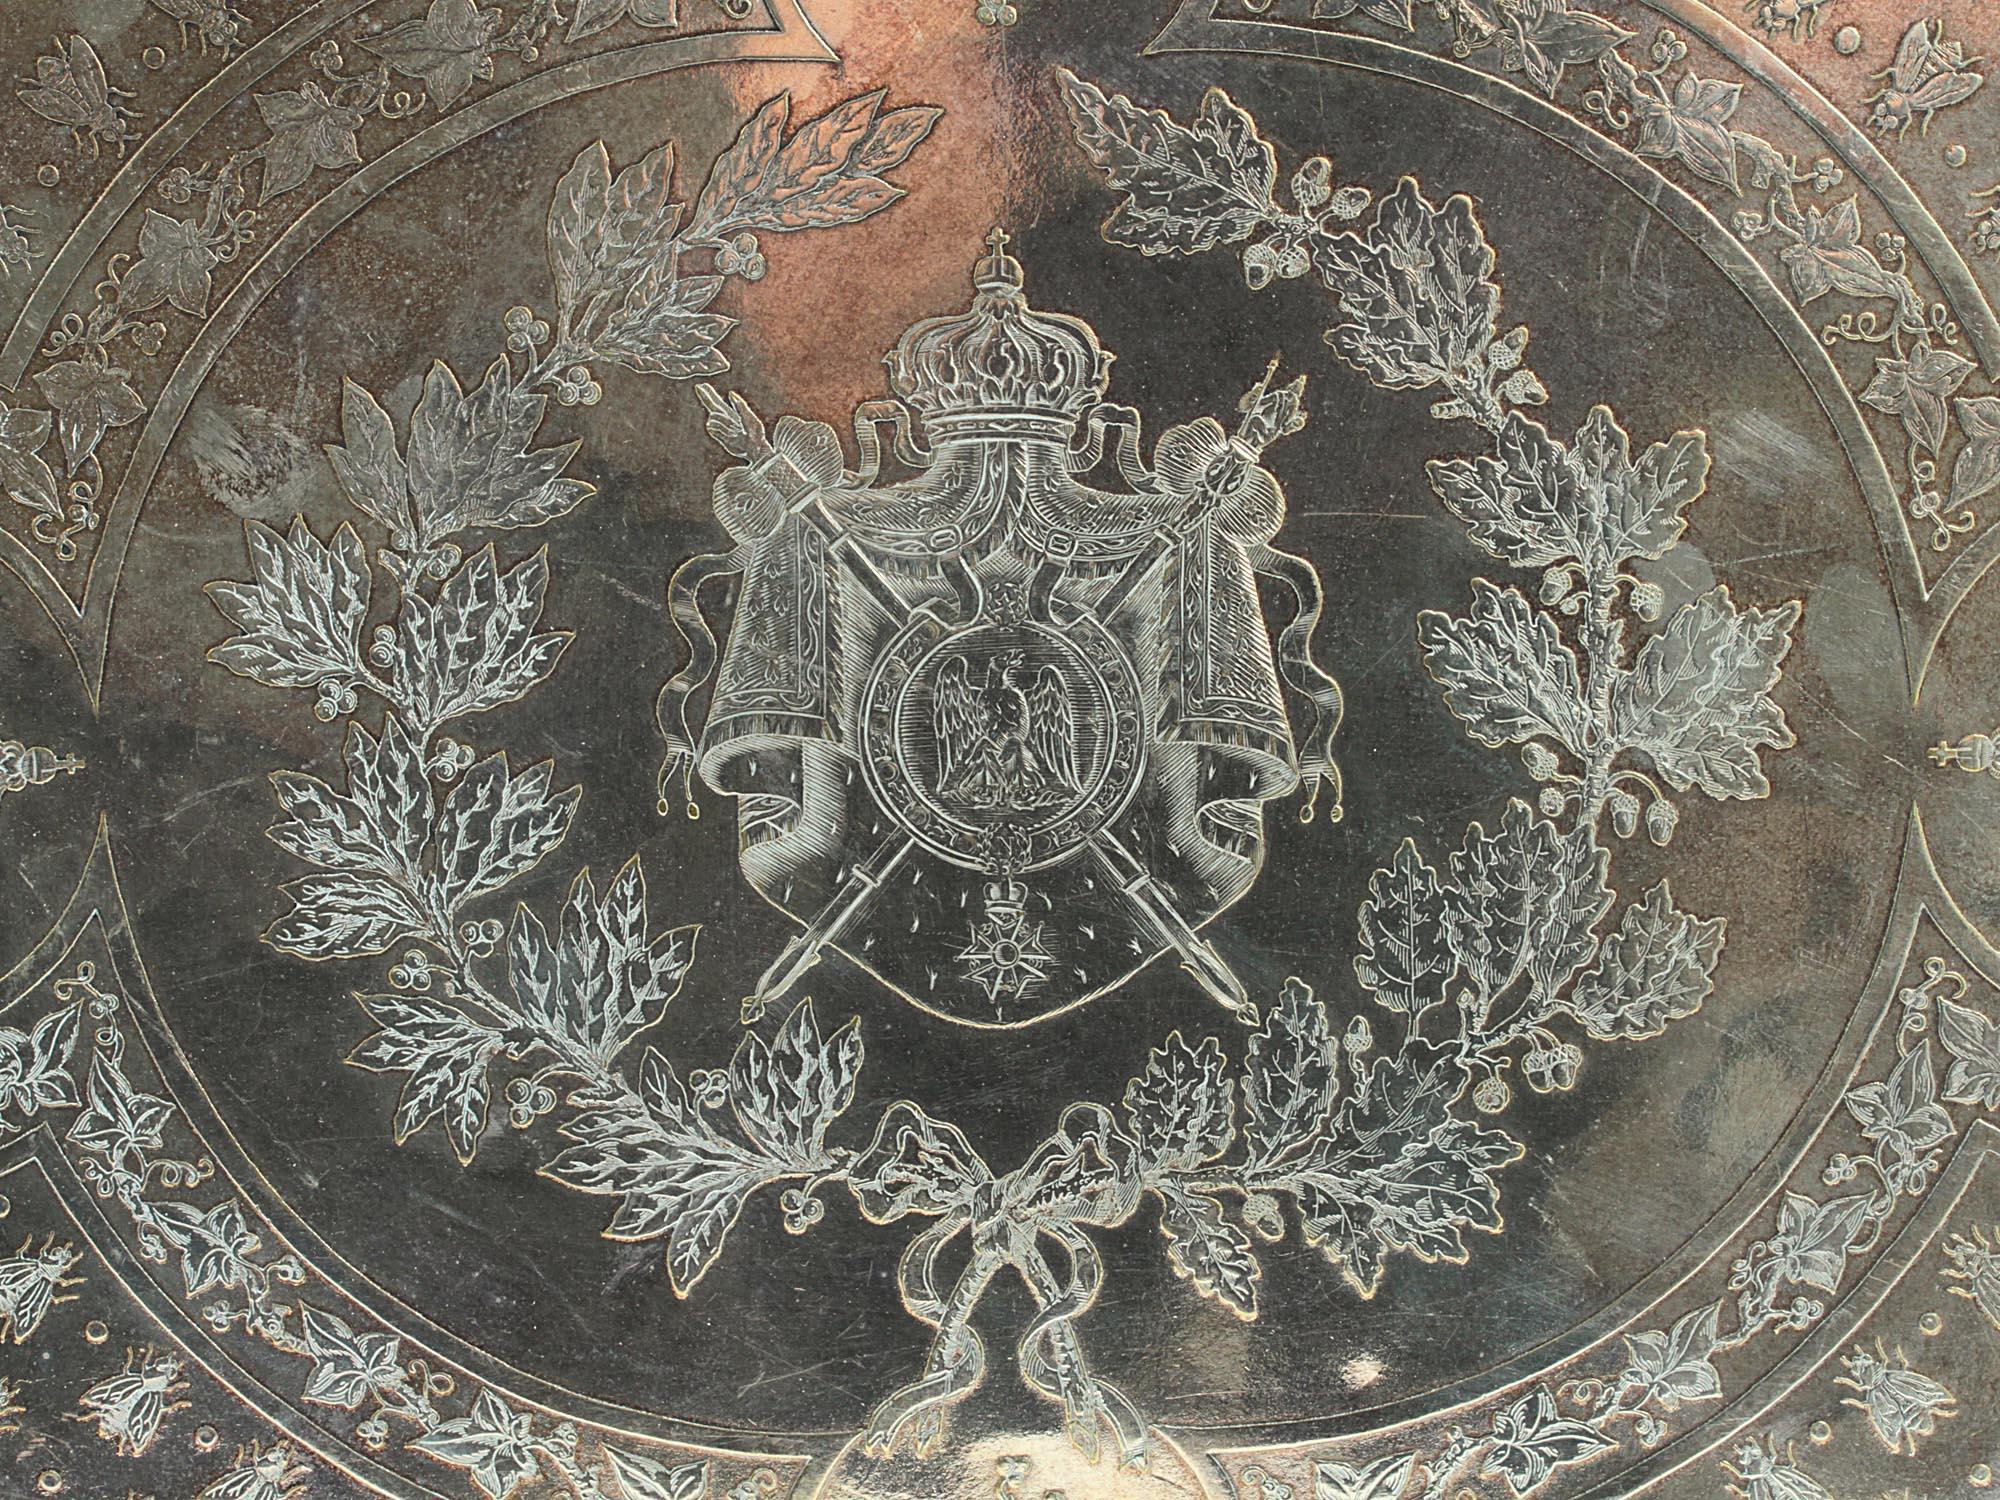 Nuestra bandeja chapada en plata Christofle presenta finos diseños grabados, como el escudo francés, la cifra napoleónica y las abejas imperiales. El reverso tiene la marca del fabricante en cartela ovalada que empieza y acaba con las letras 